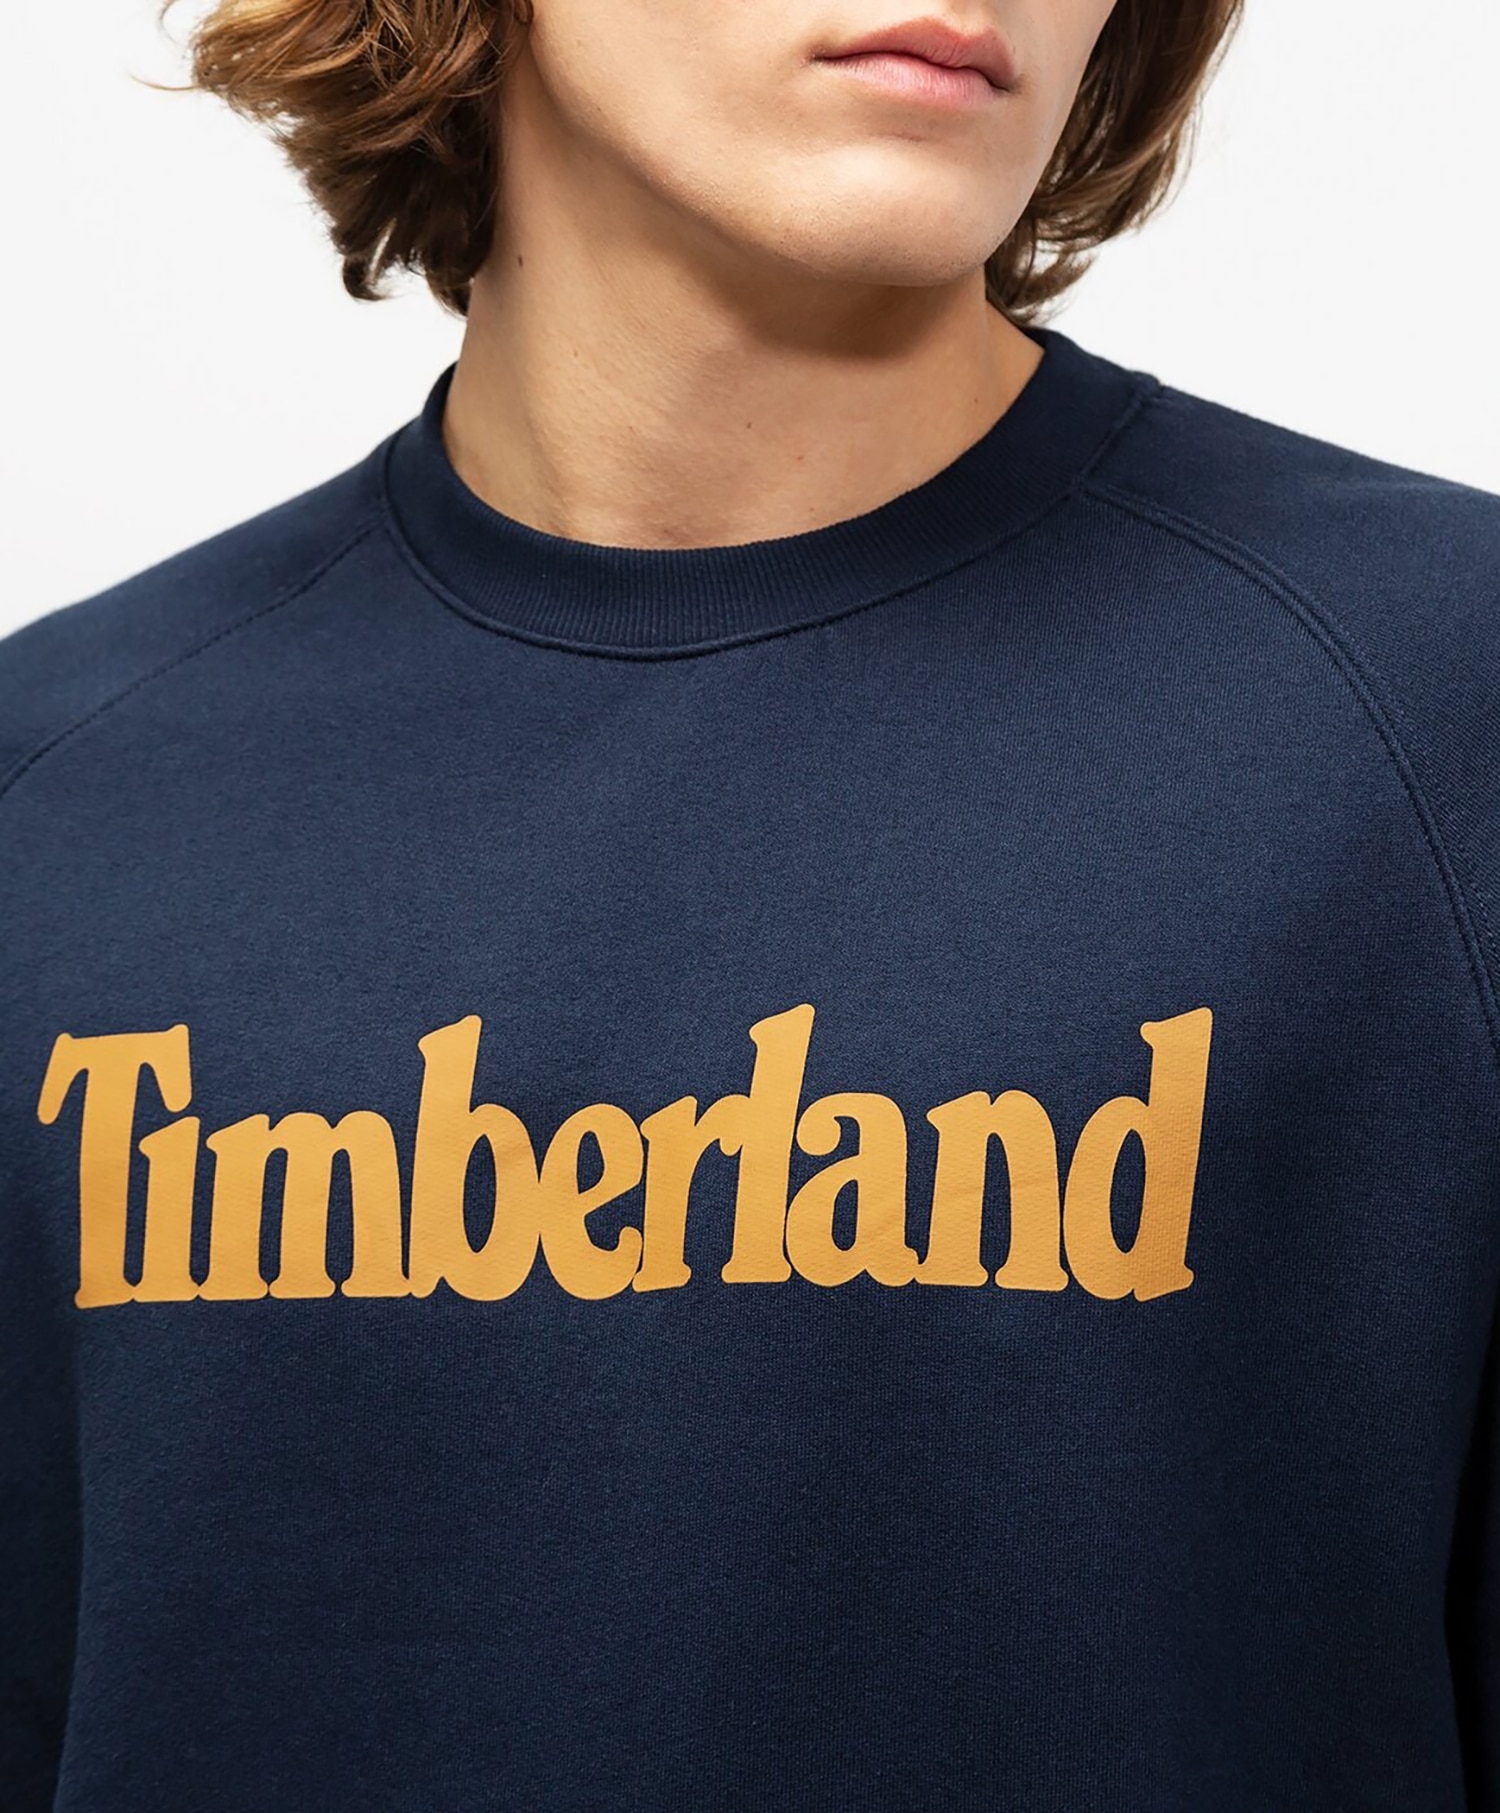 Timberland Linear Logo Sweat